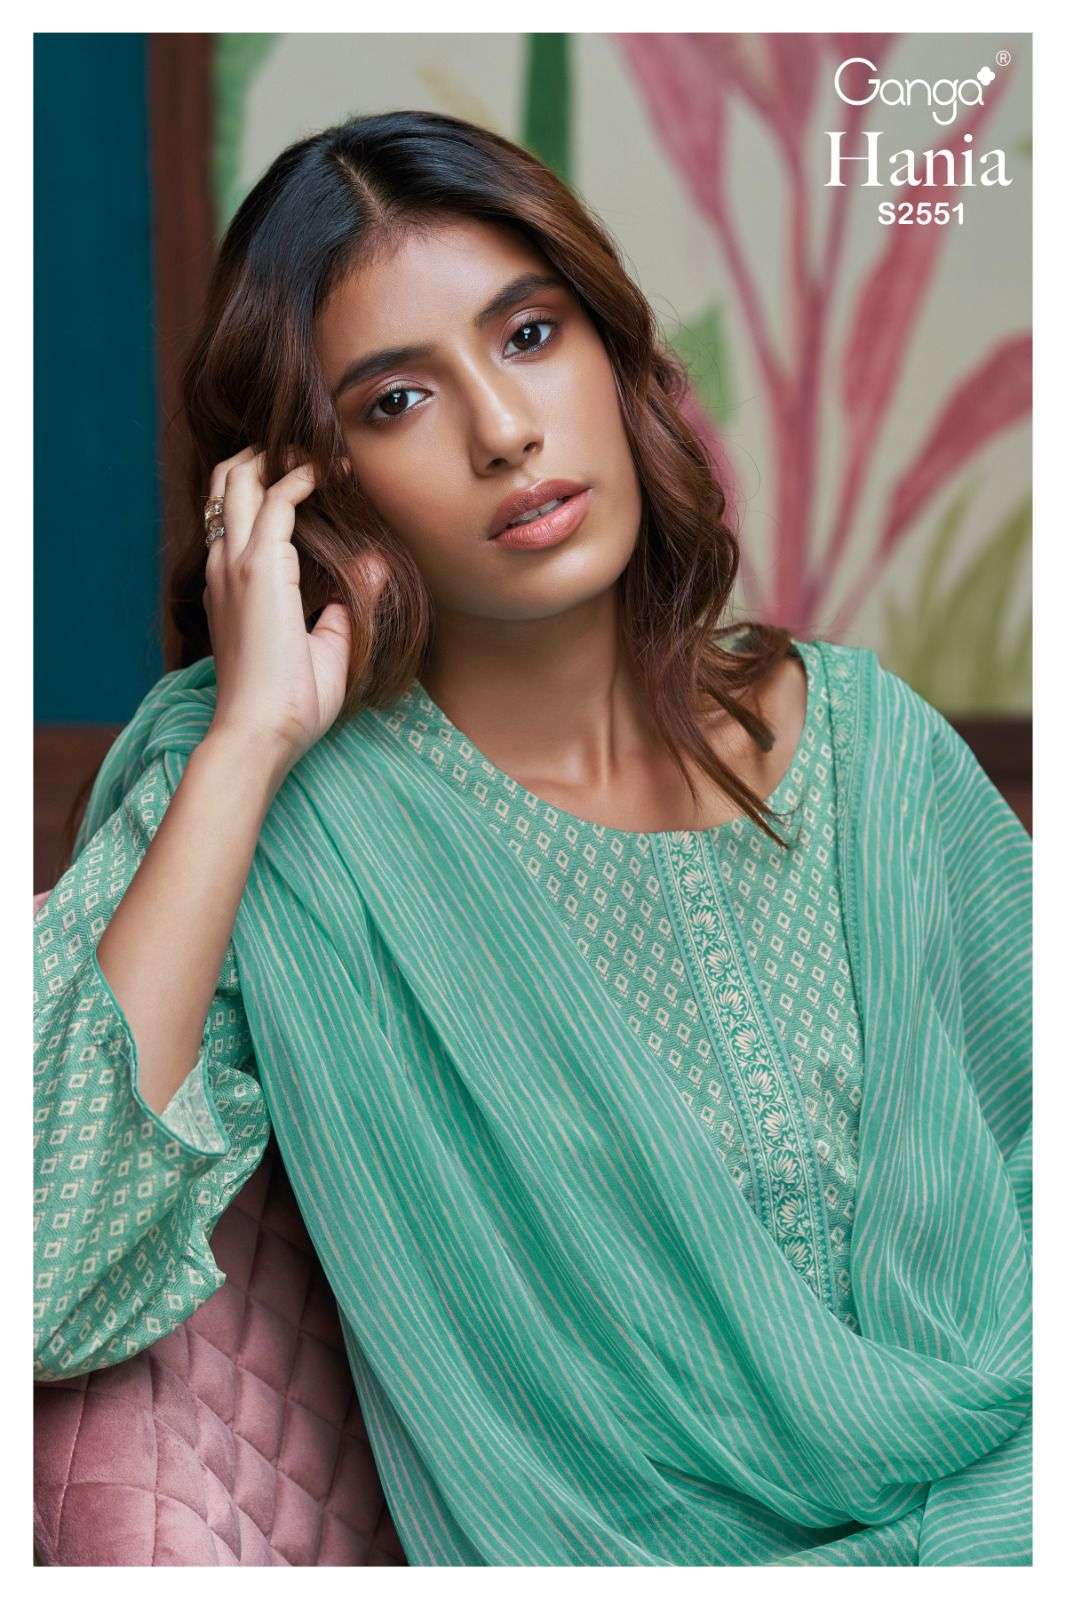 Ganga Hania 2551 Premium Cotton Ladies Salwar Suit Catalog Suppliers